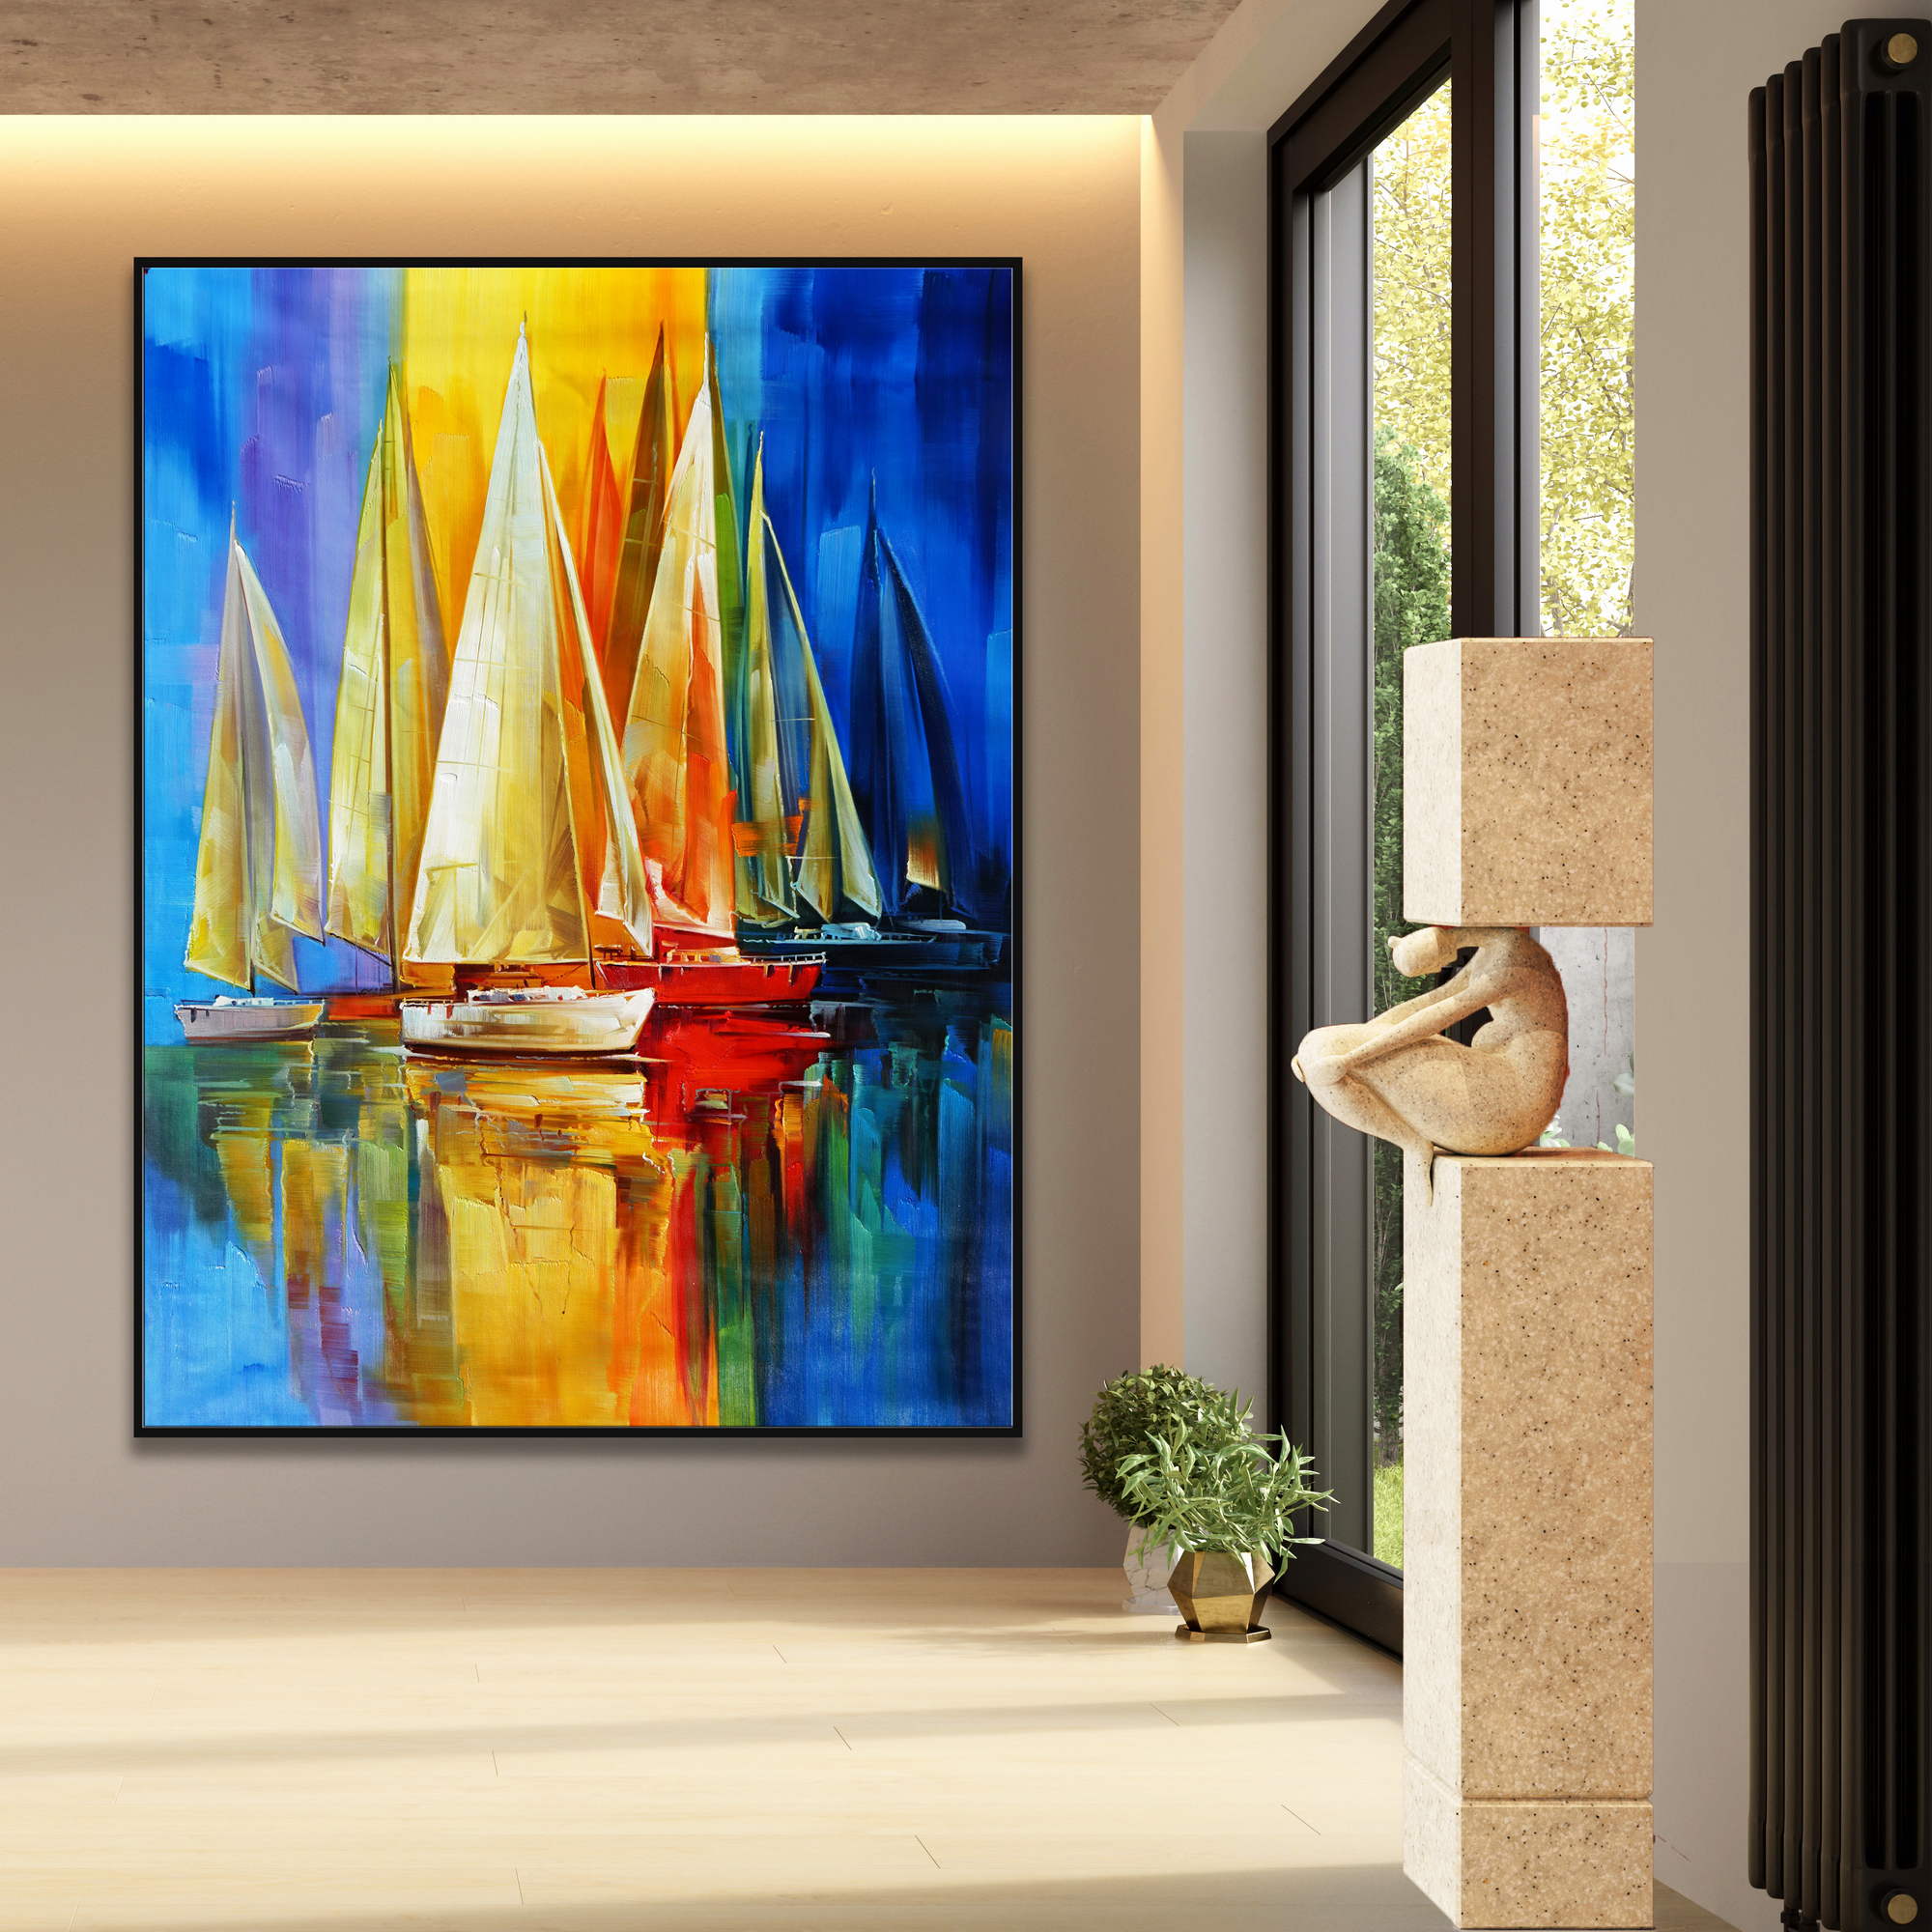 Dipinto a mano Astratto Barche a vela Colori vivaci 150x200cm